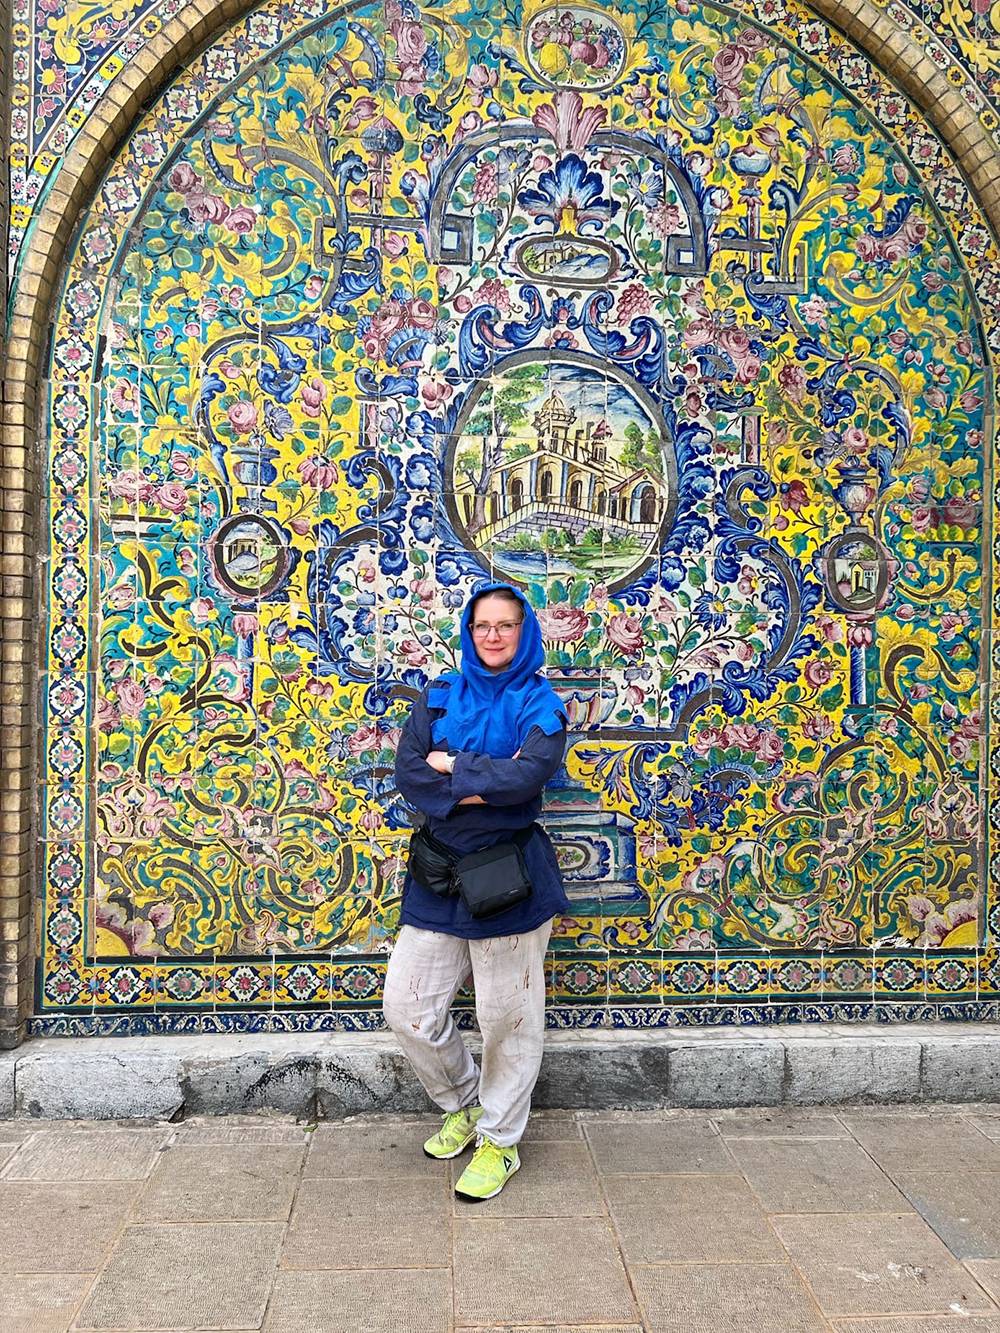 Рада, что выбрала для&nbsp;путешествия именно Иран: будто побывала совершенно в другом мире